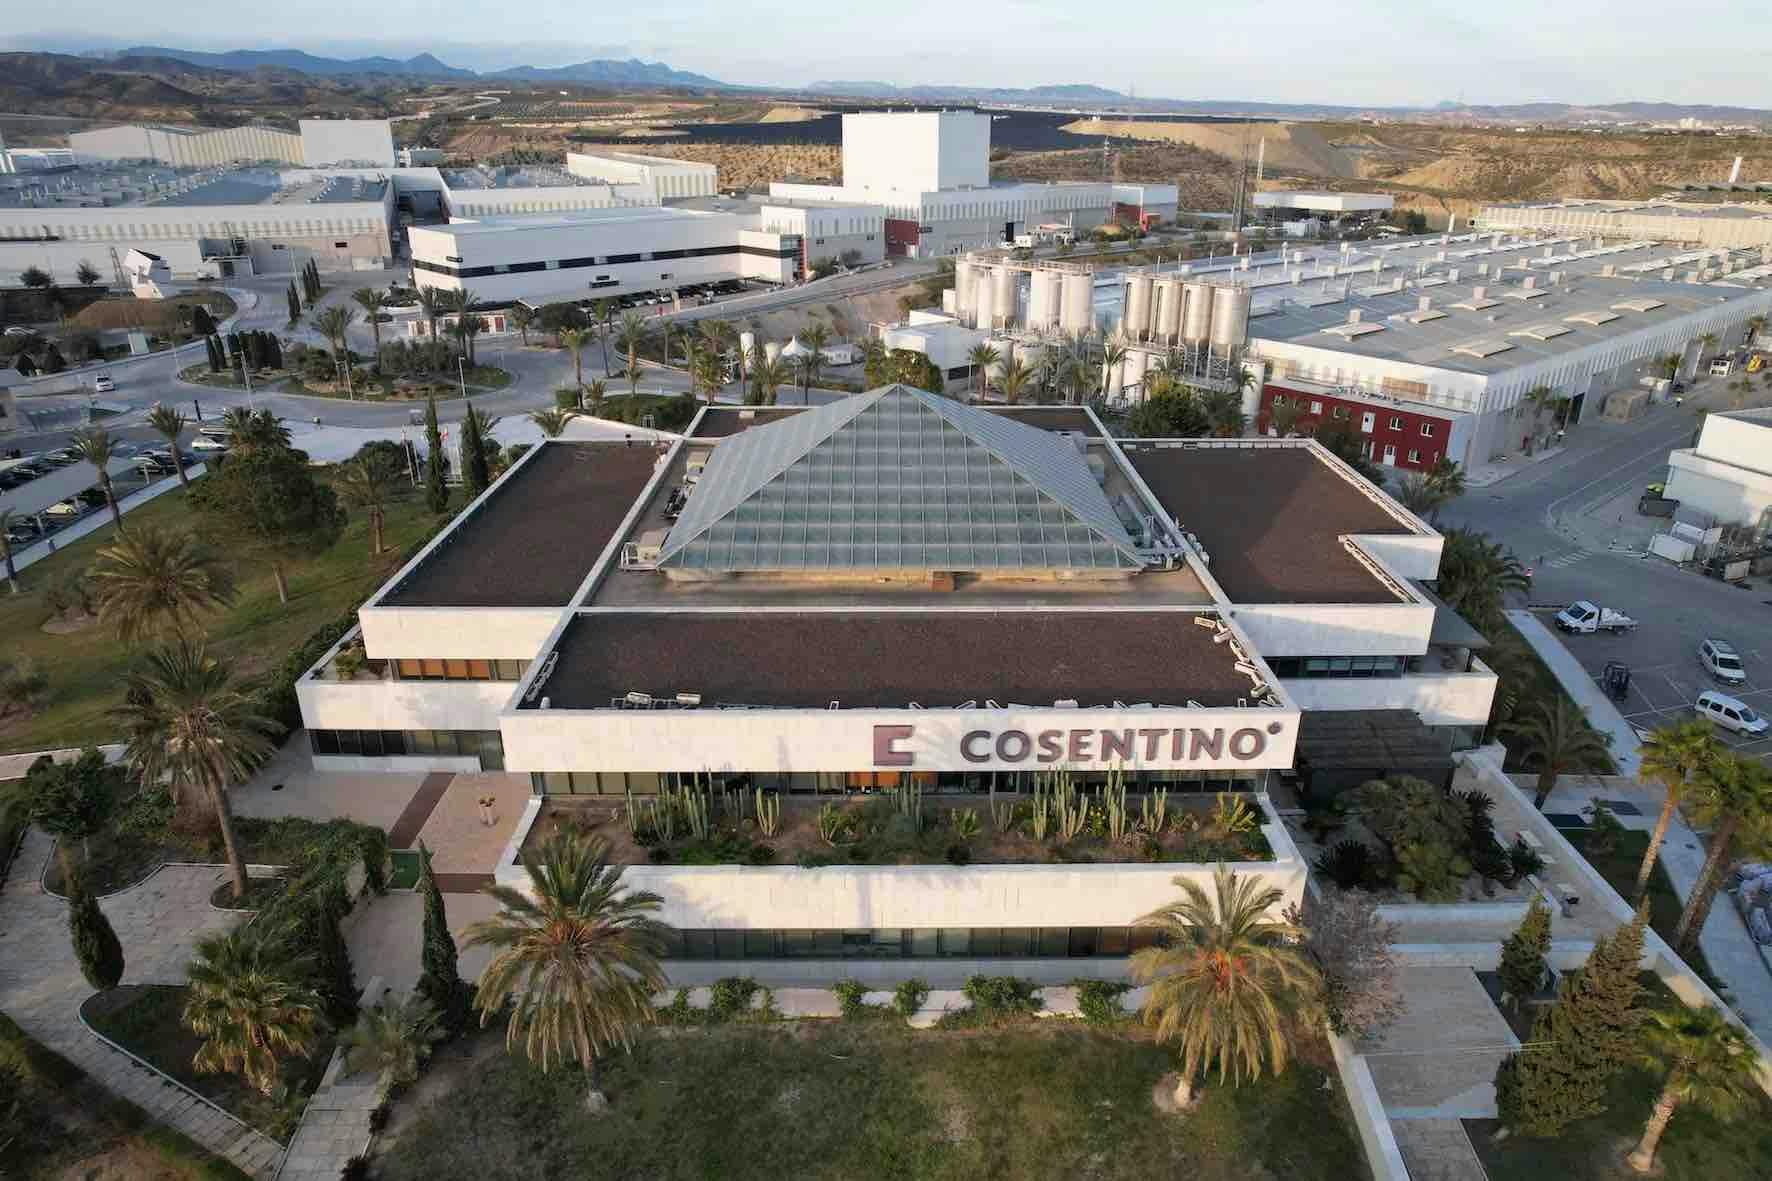 Image 32 of Parque Industrial Cosentino vista aerea oficinas d 1.jpg?auto=format%2Ccompress&ixlib=php 3.3 in Cosentino Statement - Cosentino